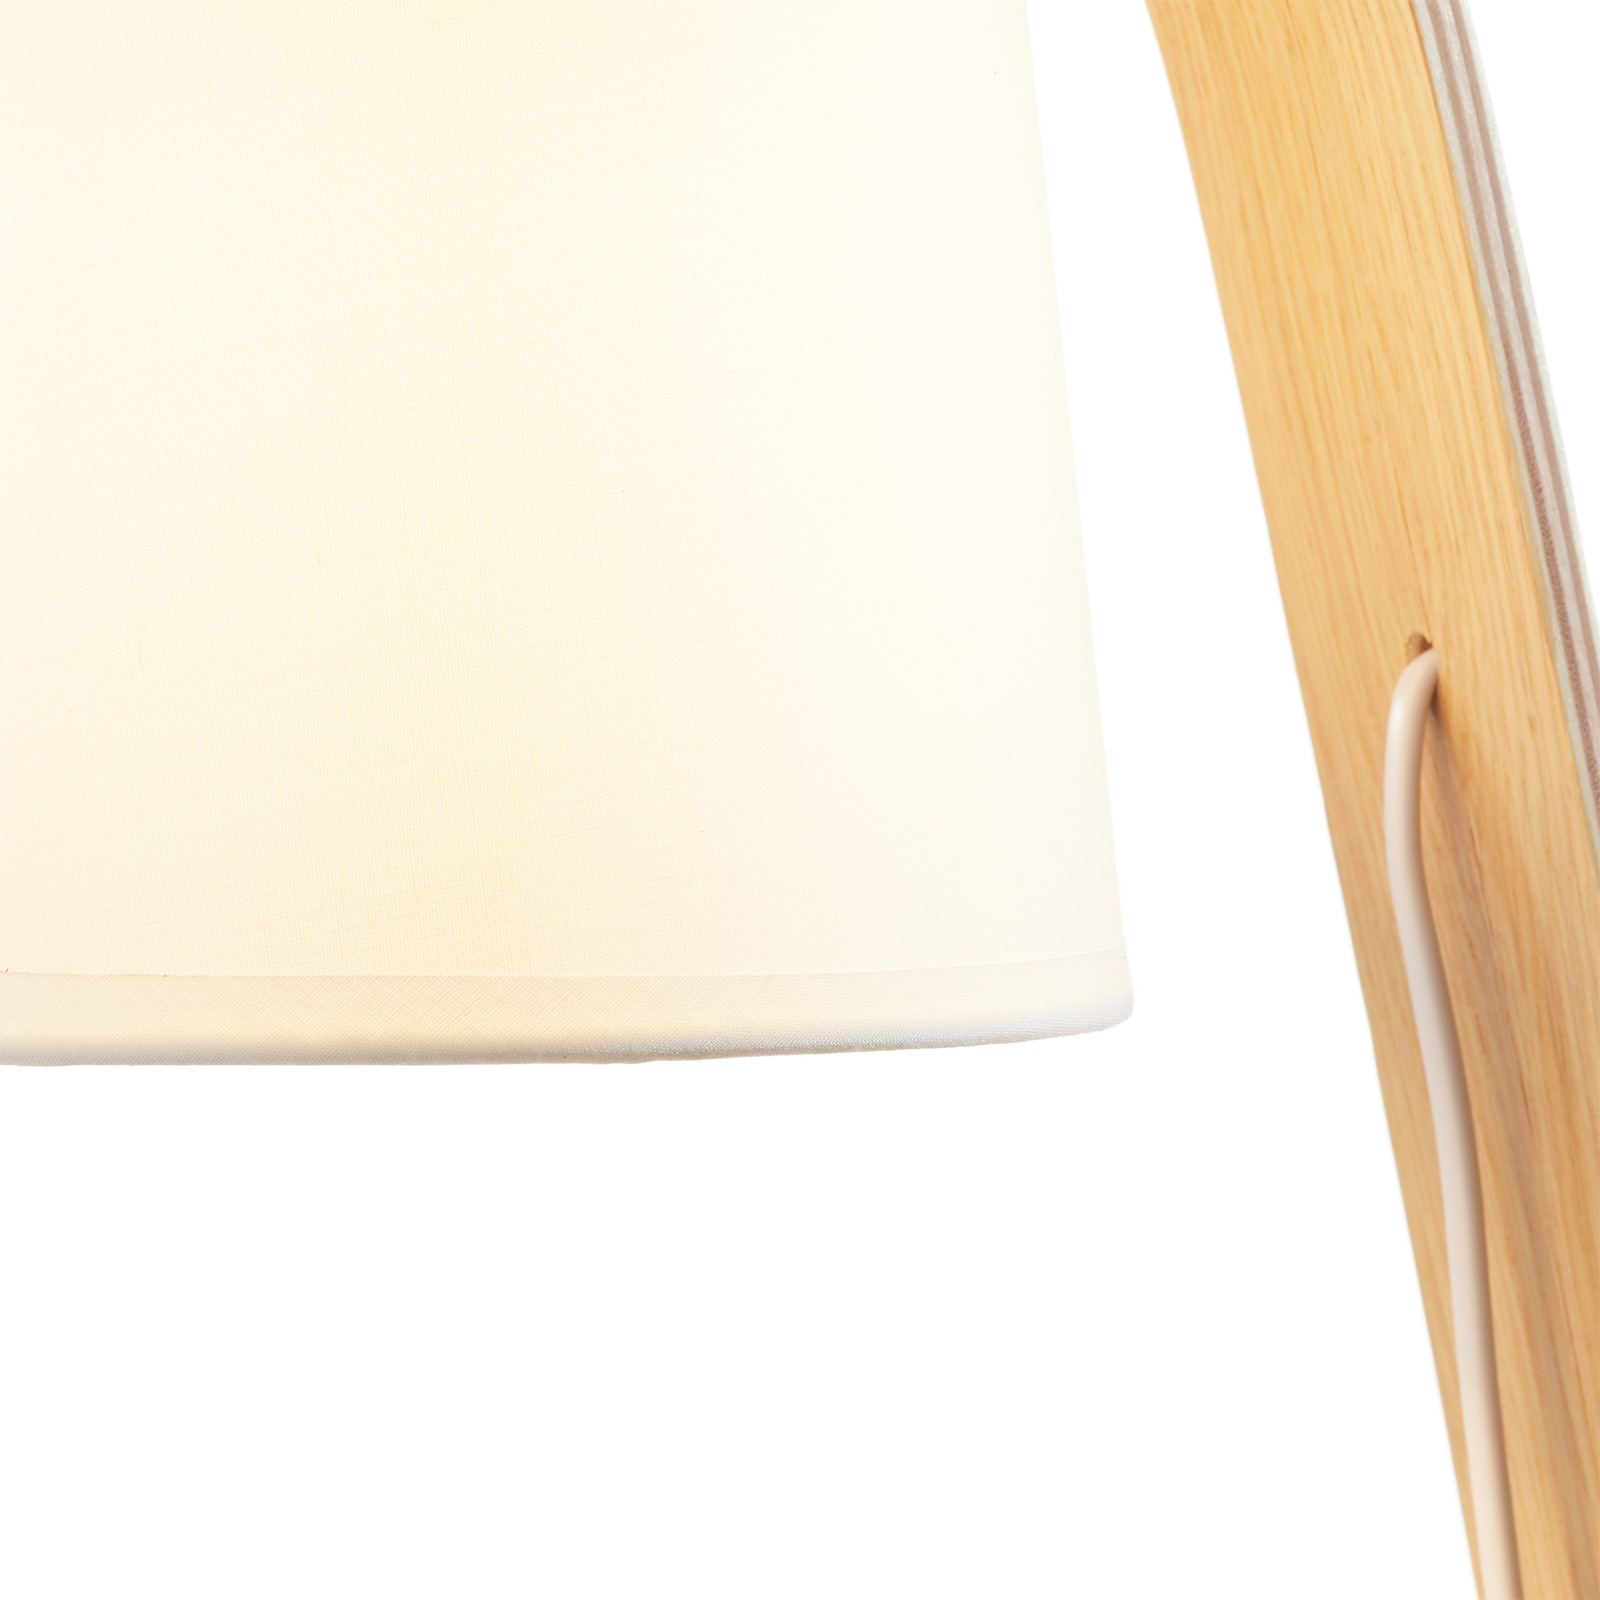 A++ Lucide Tischlampe 'Nordic' Holz-Tischleuchte Holz Modern Wohnzimmerleuchte 